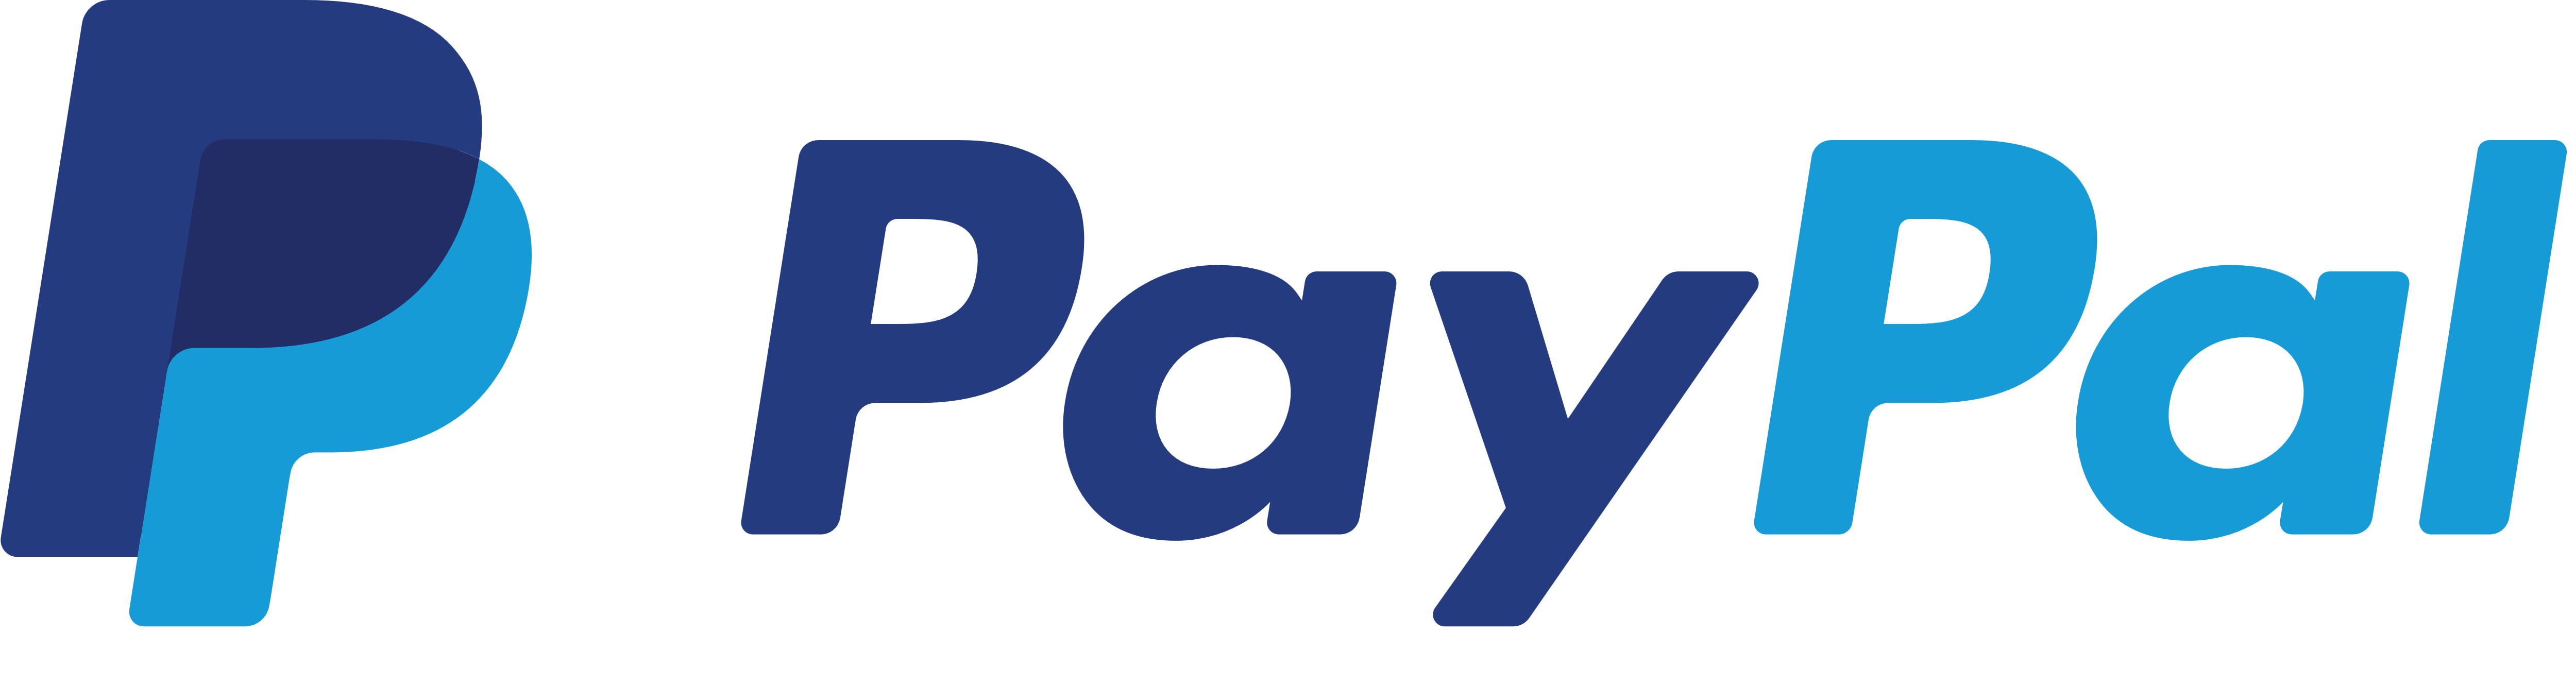 Paypal Logotype PNG - 105224